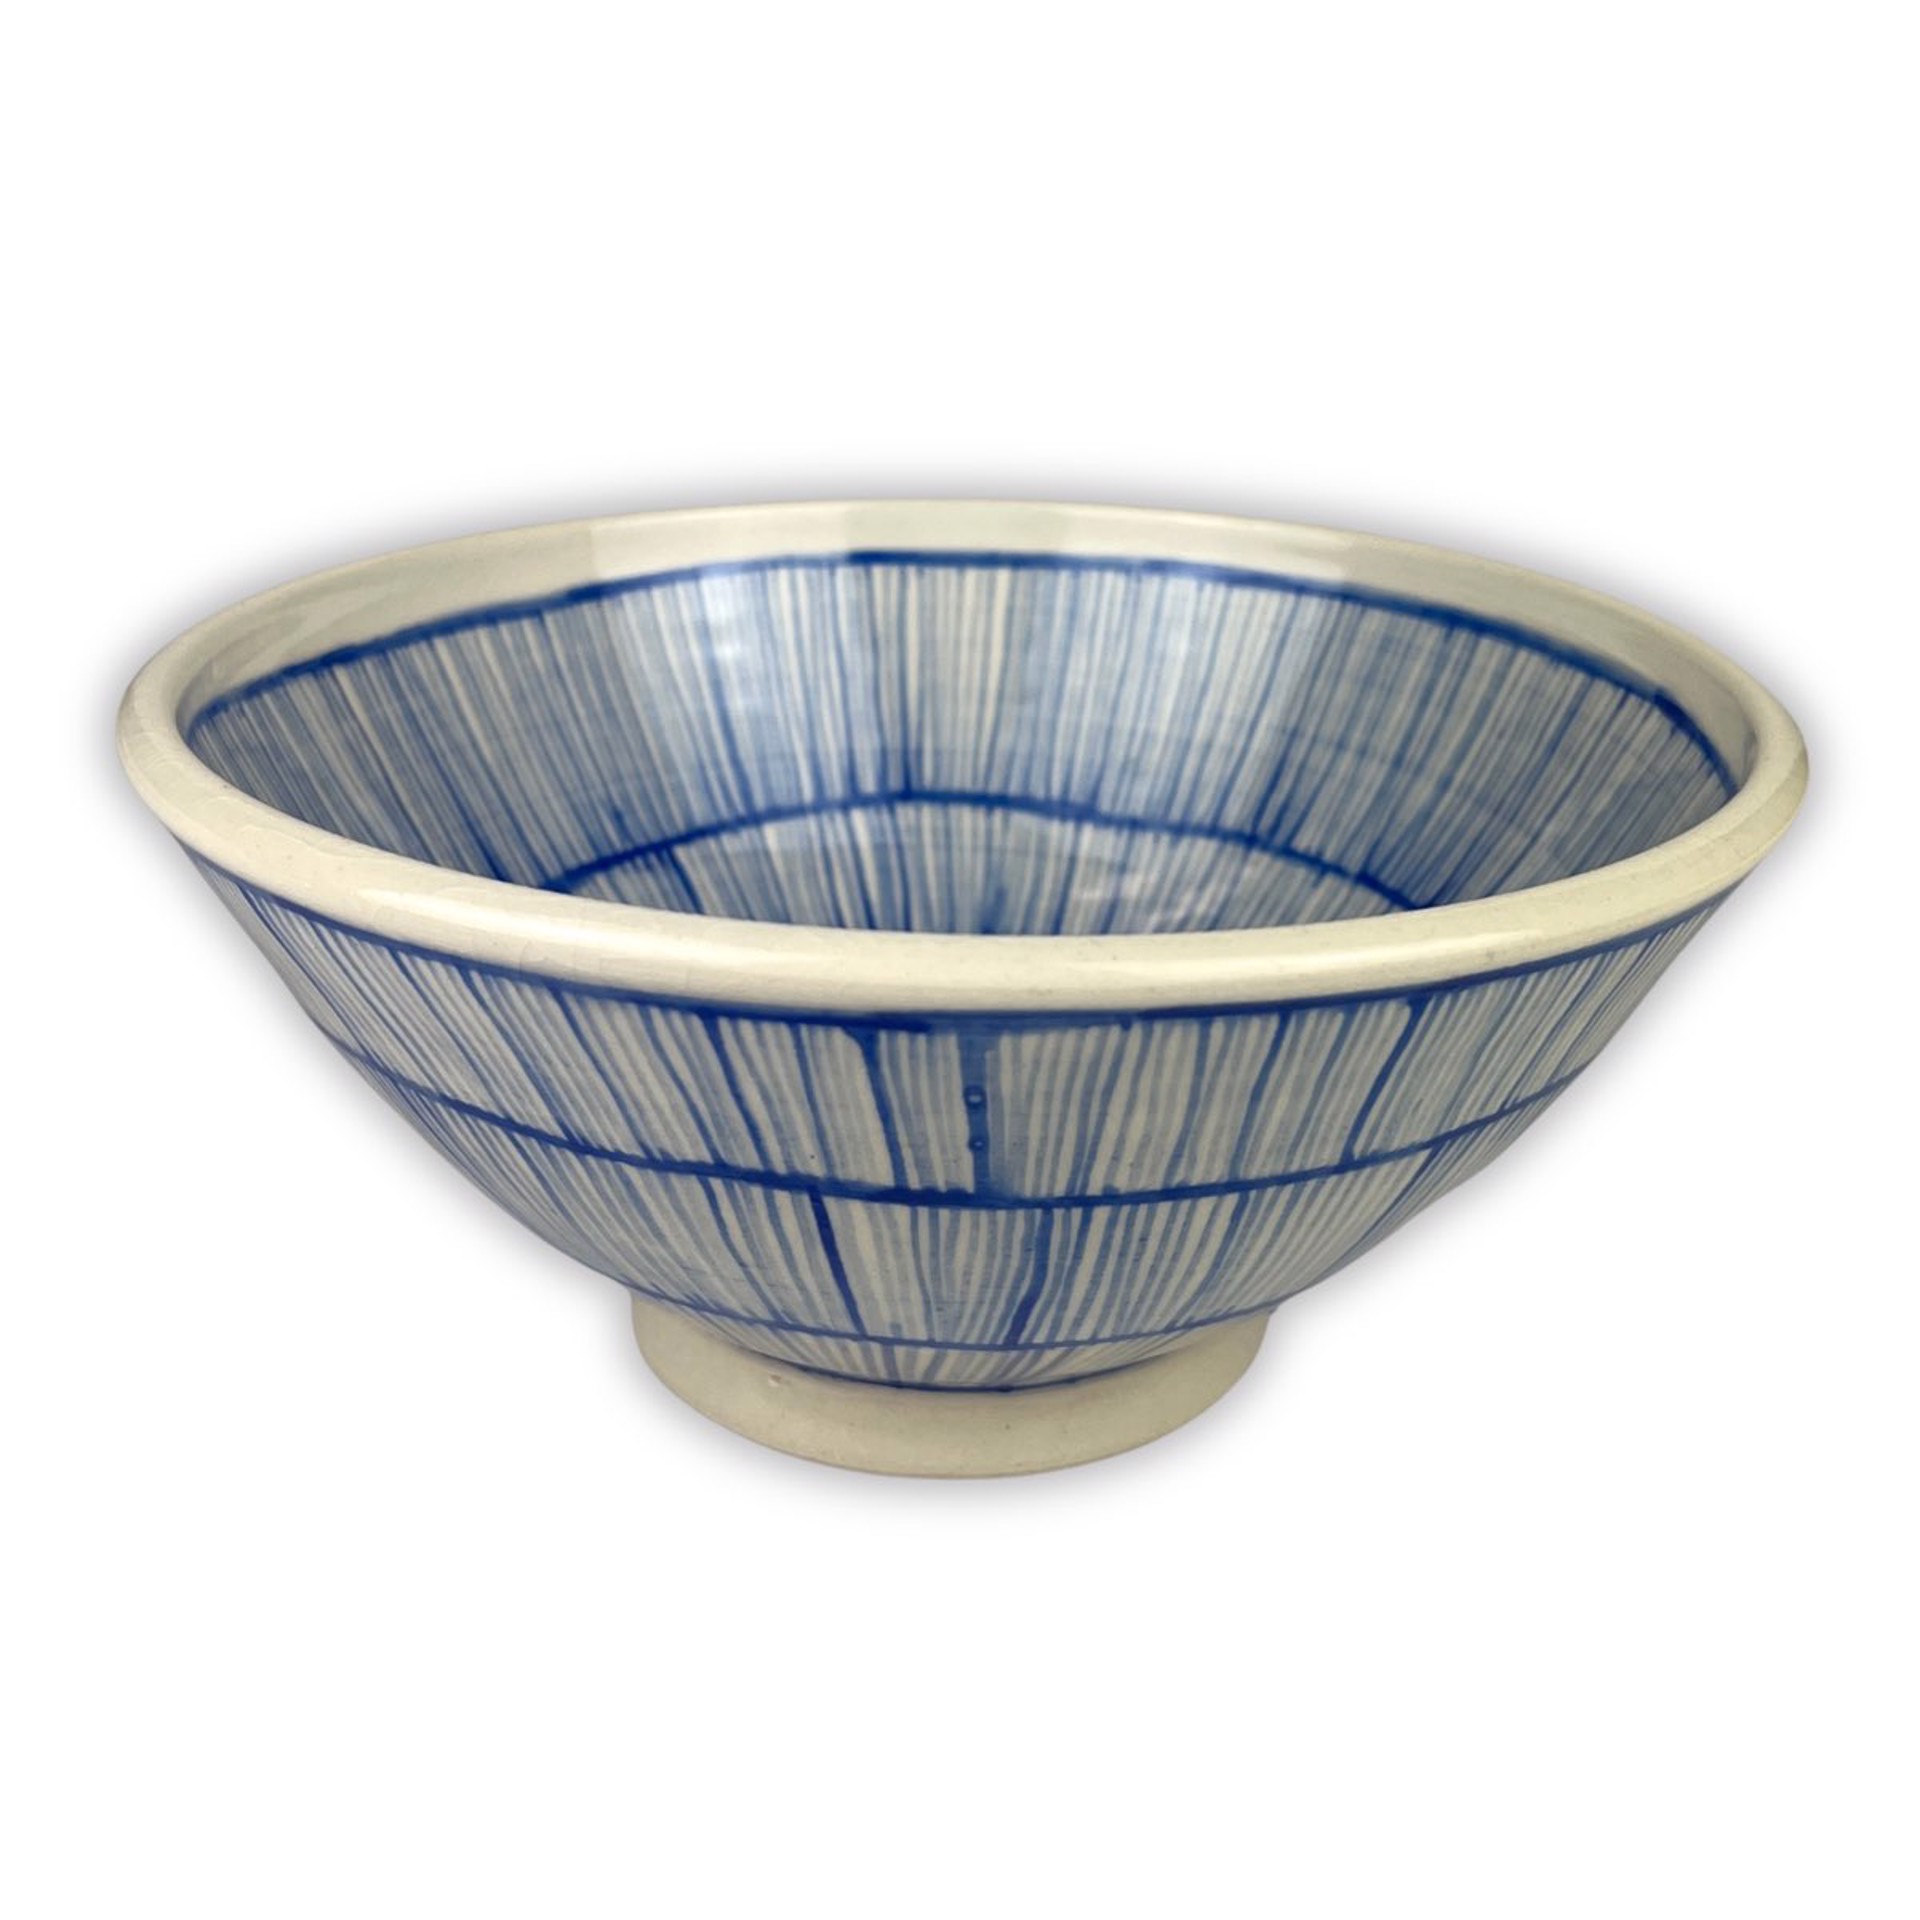 Medium Bowl by Mary Lynn Portera